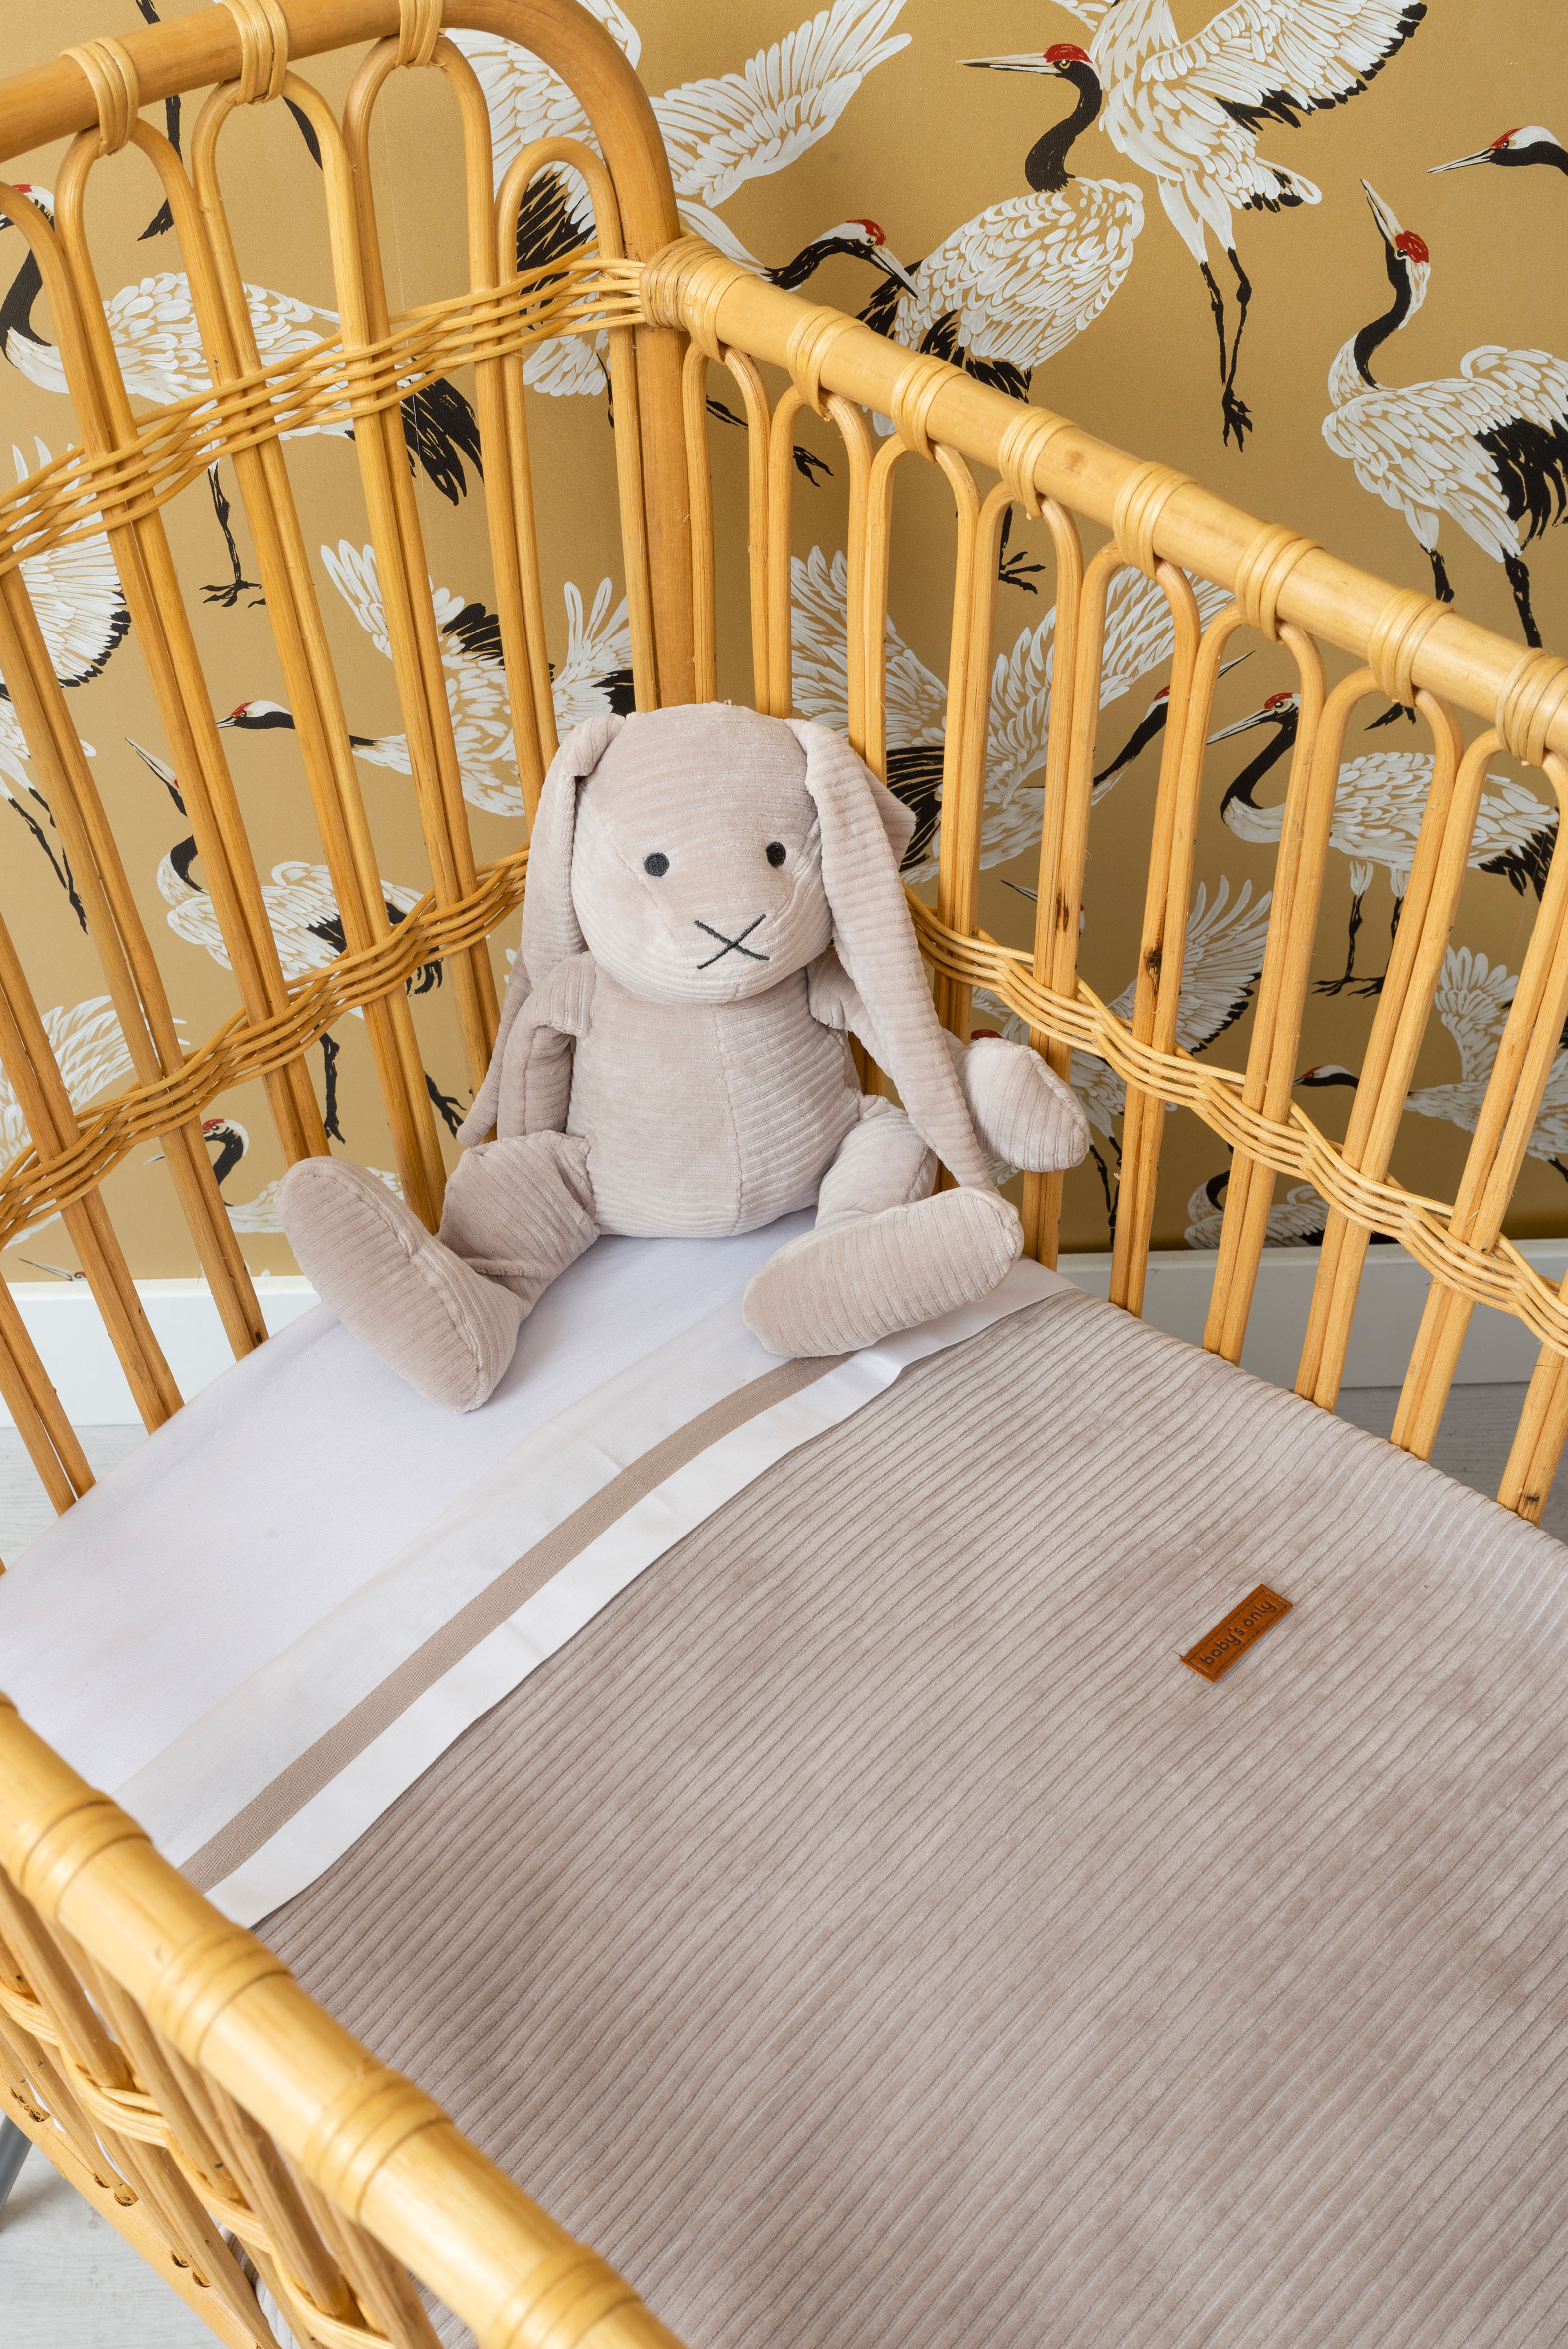 Couverture lit bébé teddy Sense caillou gris